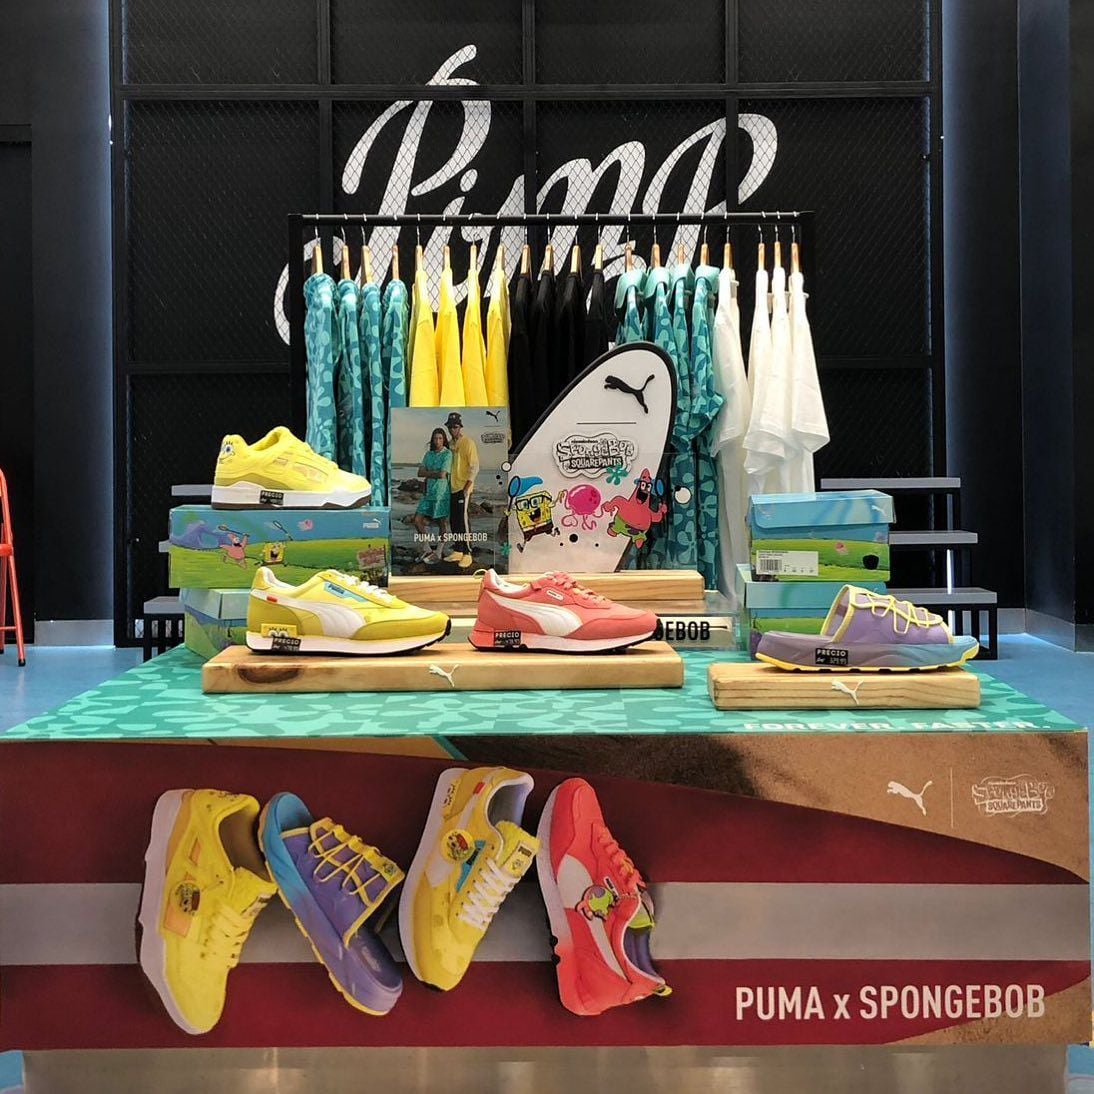 La marca Pimp lanzó al mercado las Puma en colaboración con el dibujo animado Bob Esponja. (Foto: Pimp)